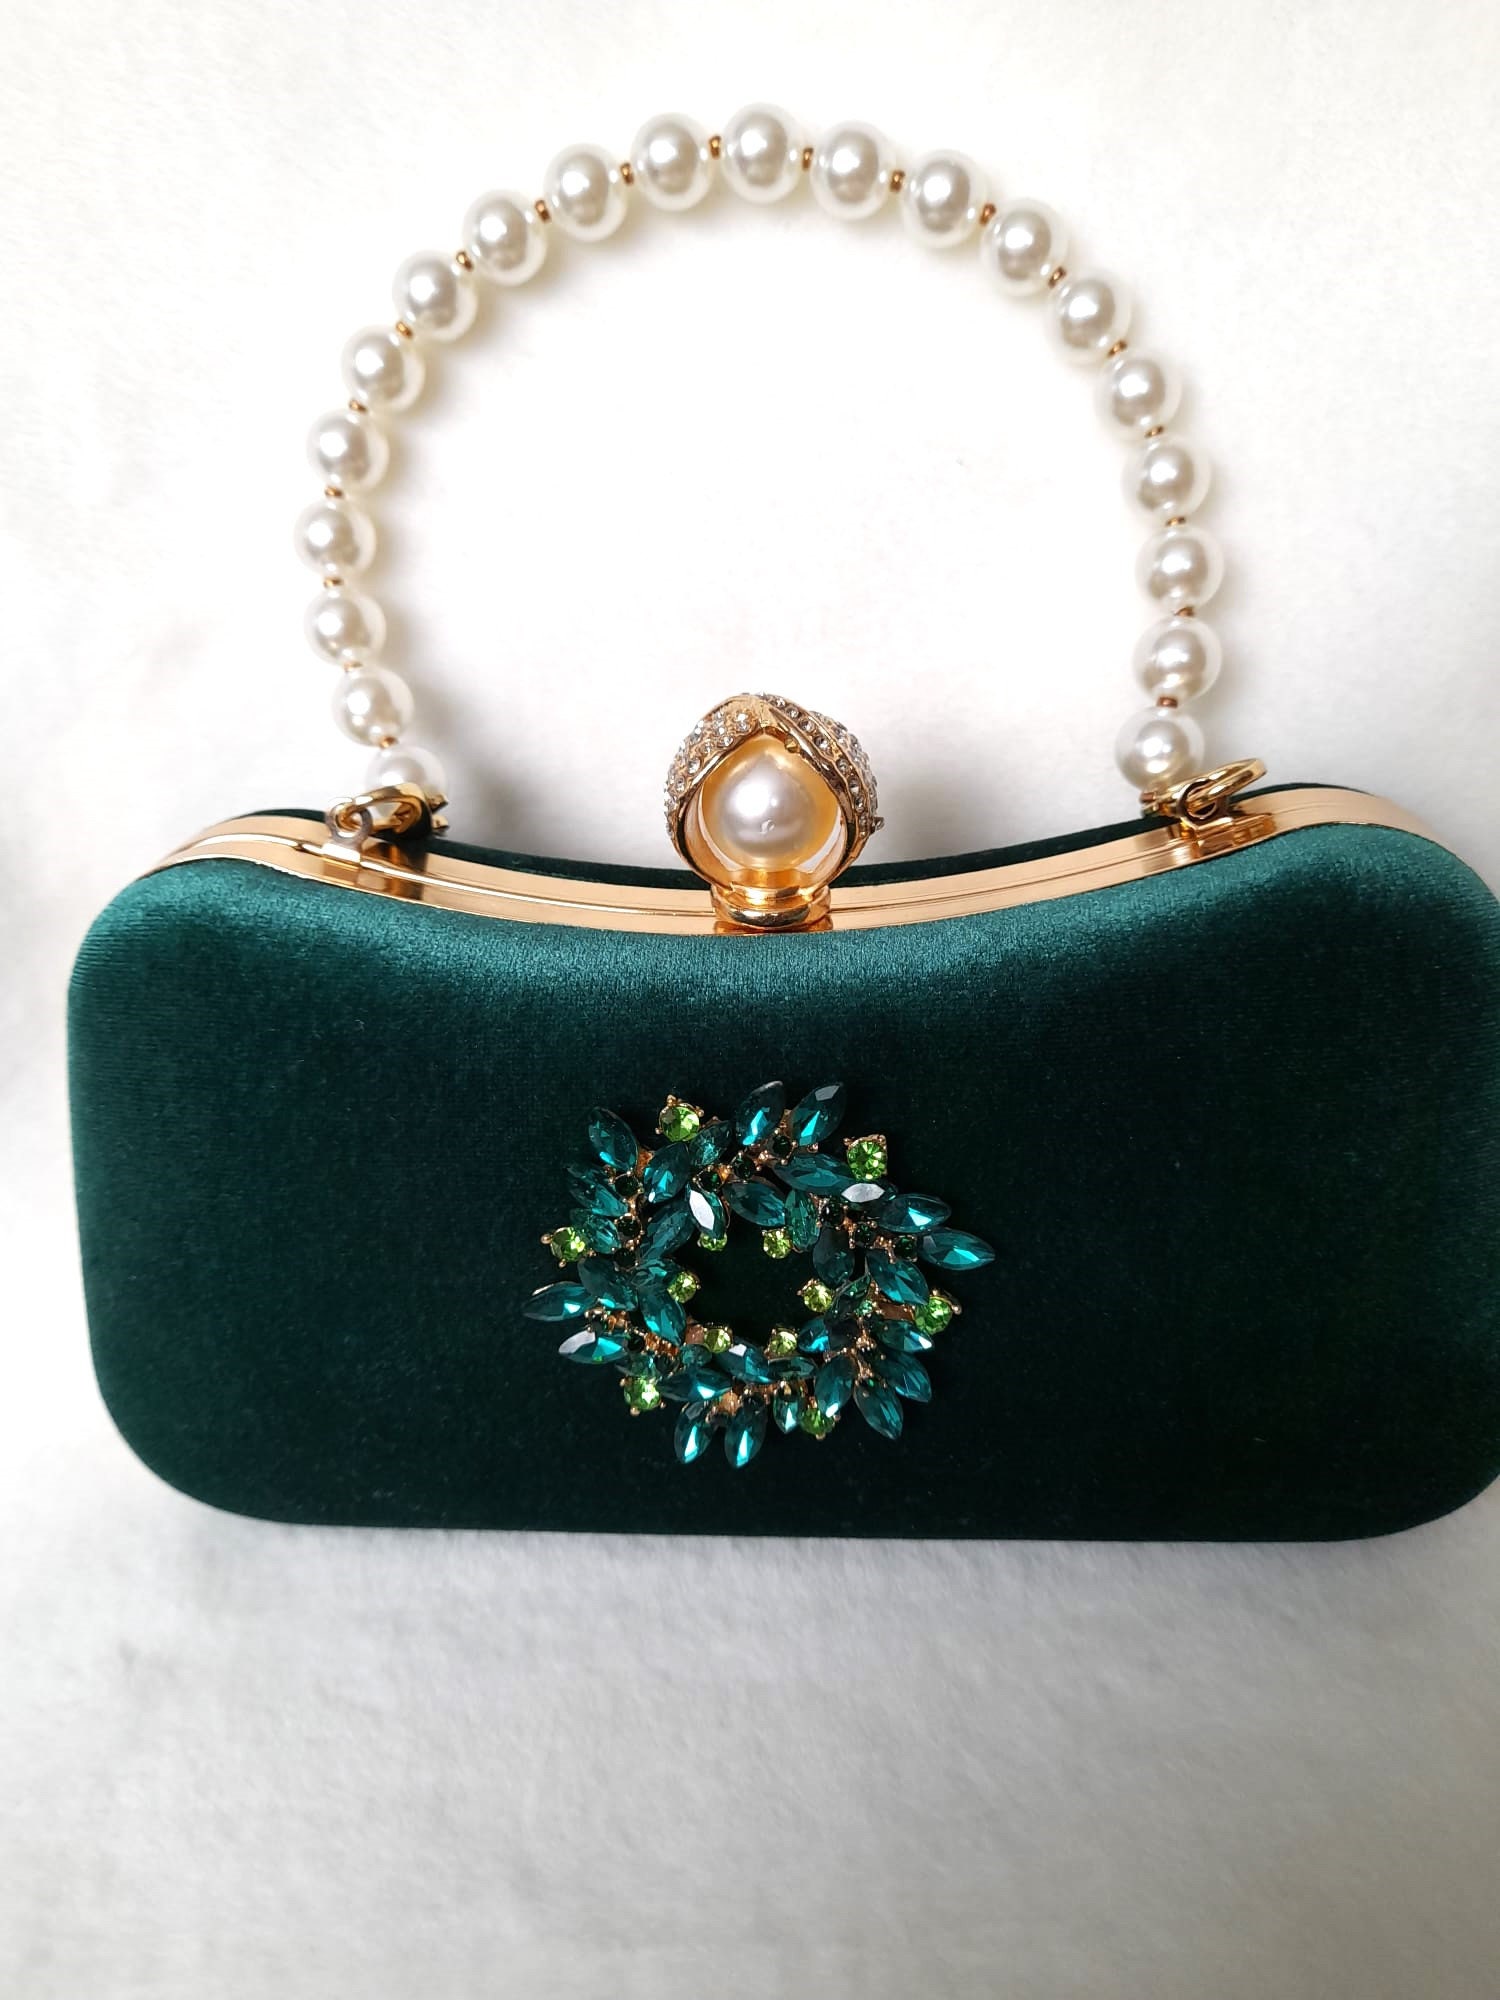  Velvet Clutch, Emerald Green Foldover Bag, Fold Over